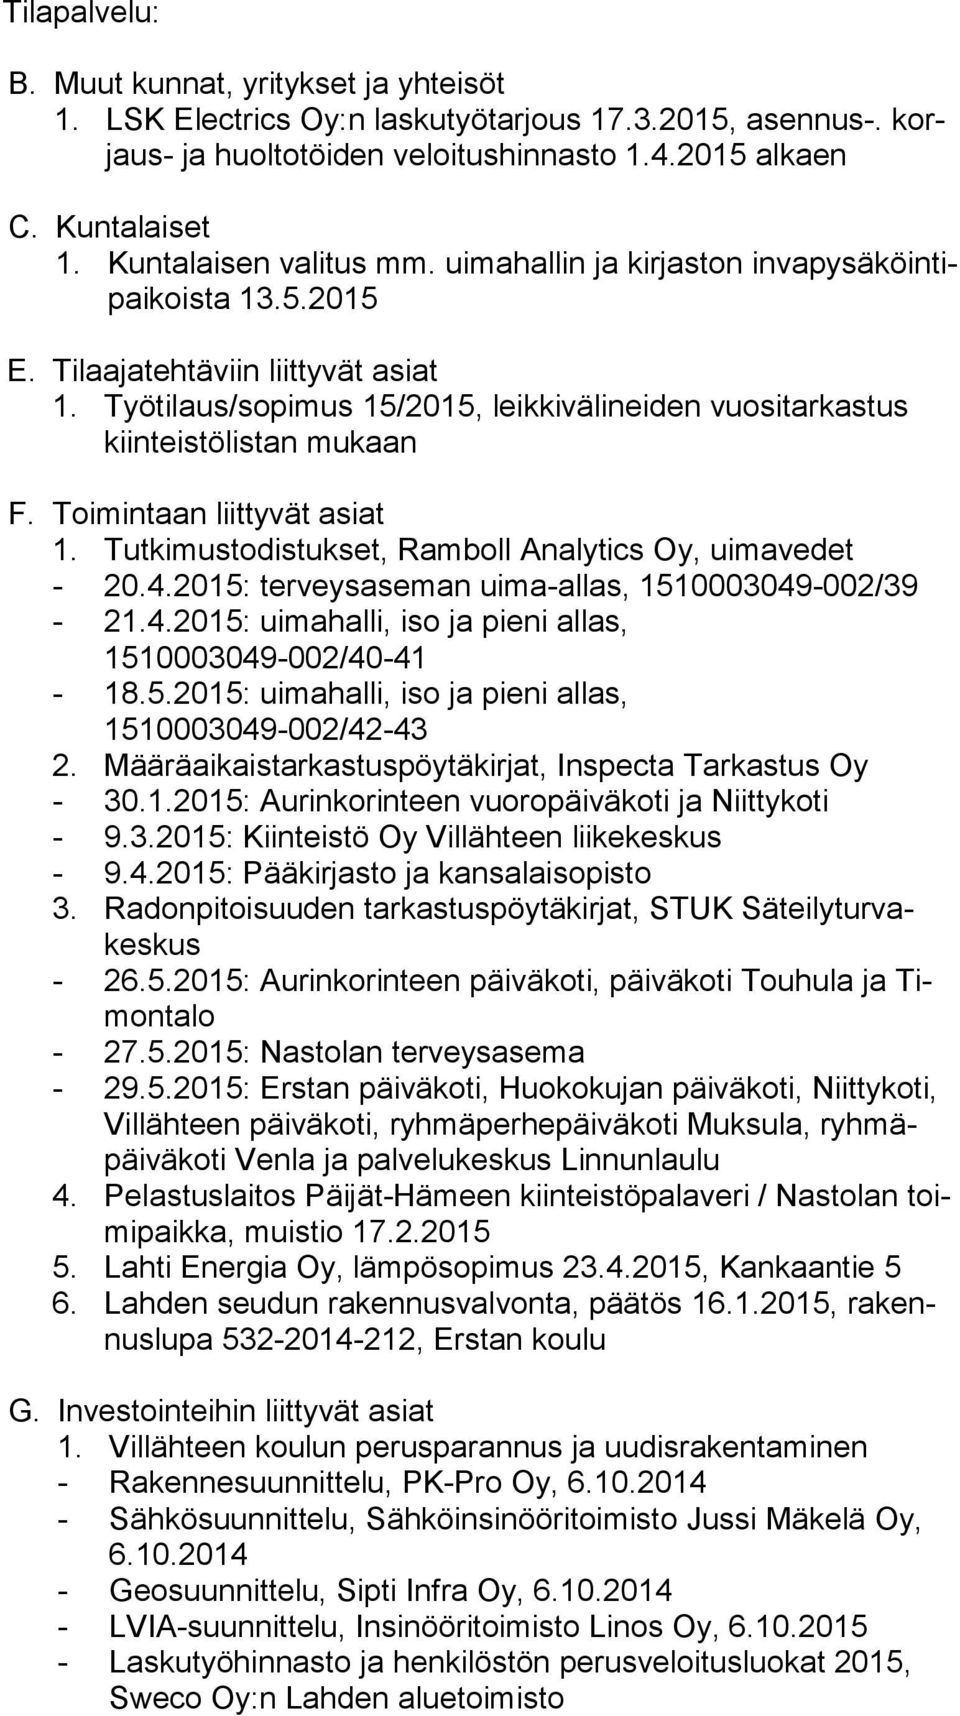 Työtilaus/sopimus 15/2015, leikkivälineiden vuositarkastus kiin teis tö lis tan mukaan F. Toimintaan liittyvät asiat 1. Tutkimustodistukset, Ramboll Analytics Oy, uimavedet - 20.4.